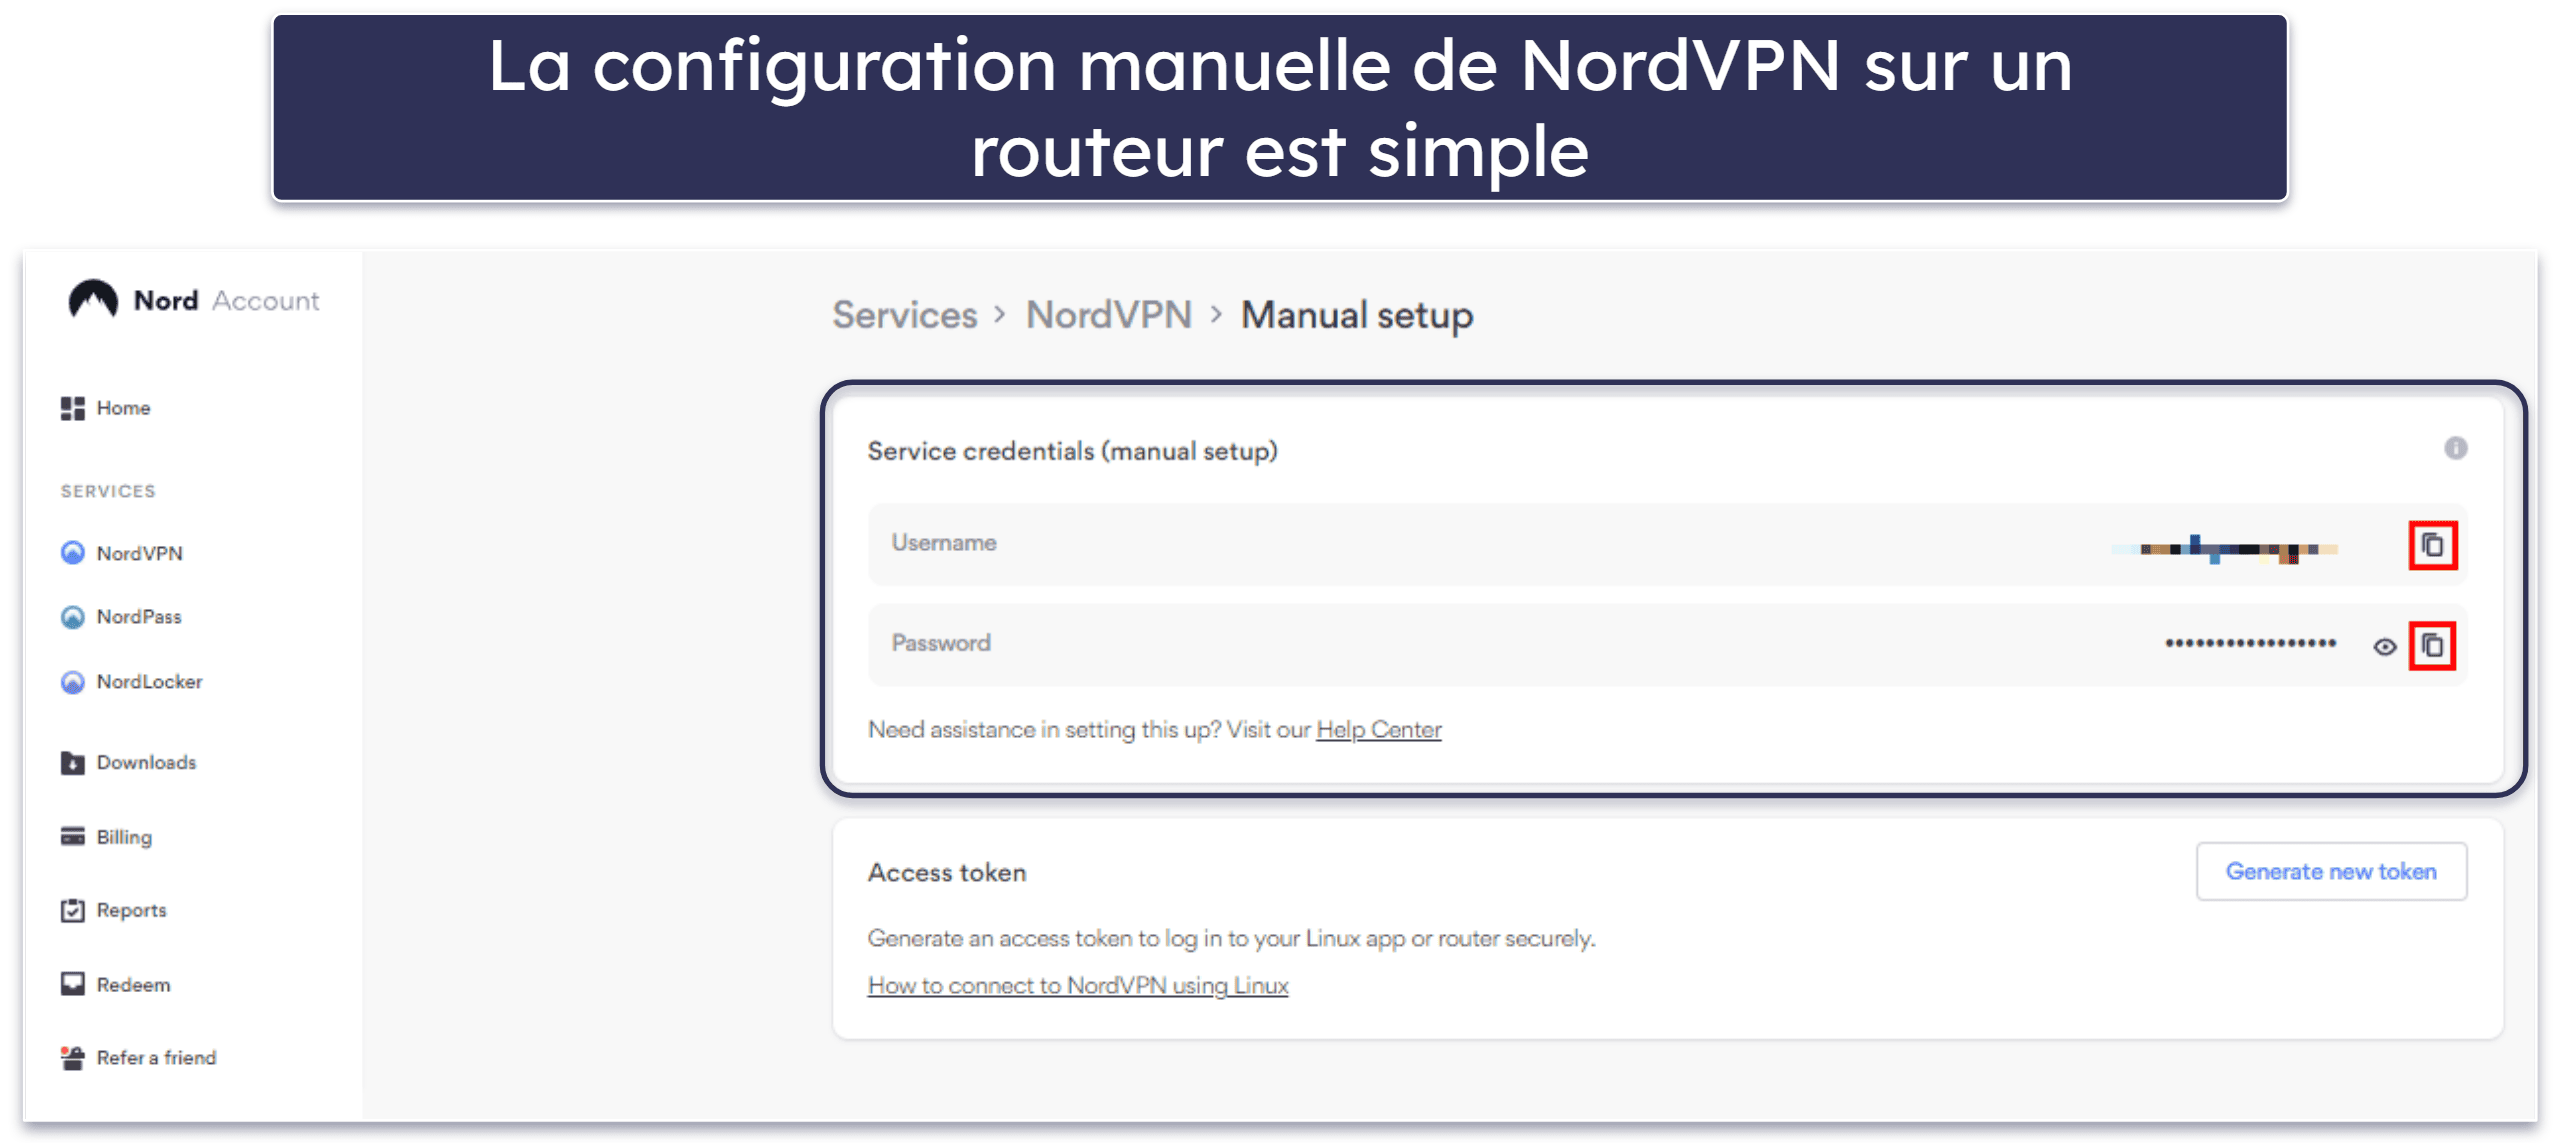 4. NordVPN : des débits élevés pour le streaming sur Chromecast